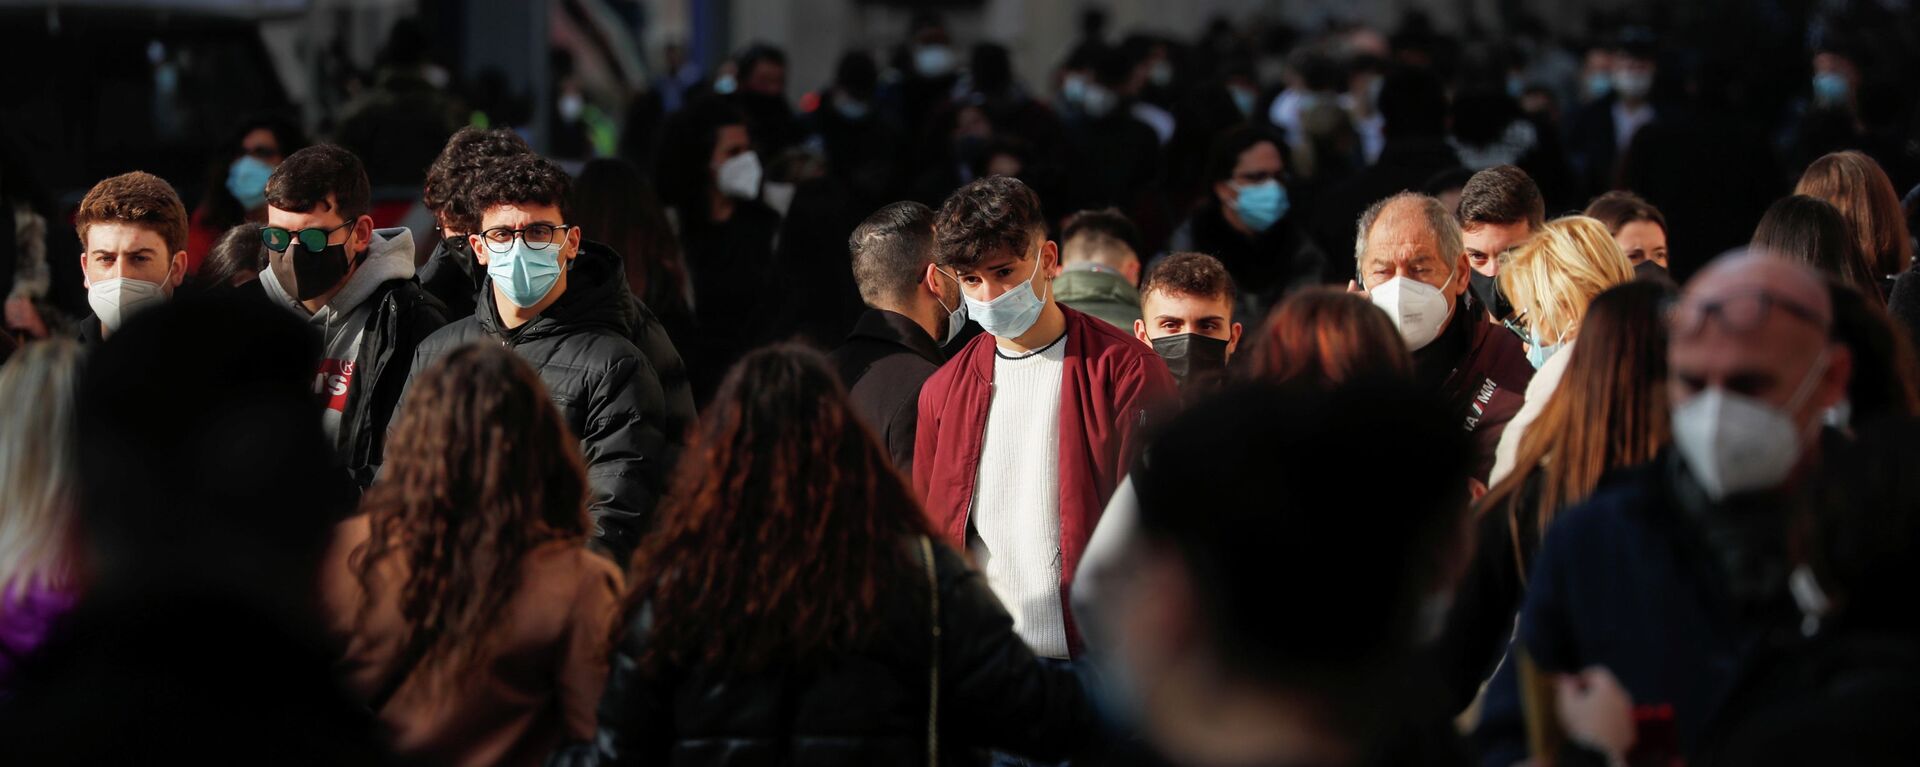 Люди в защитных масках идут по главной торговой улице Виа-дель-Корсо в Риме, Италия - Sputnik Кыргызстан, 1920, 01.03.2021